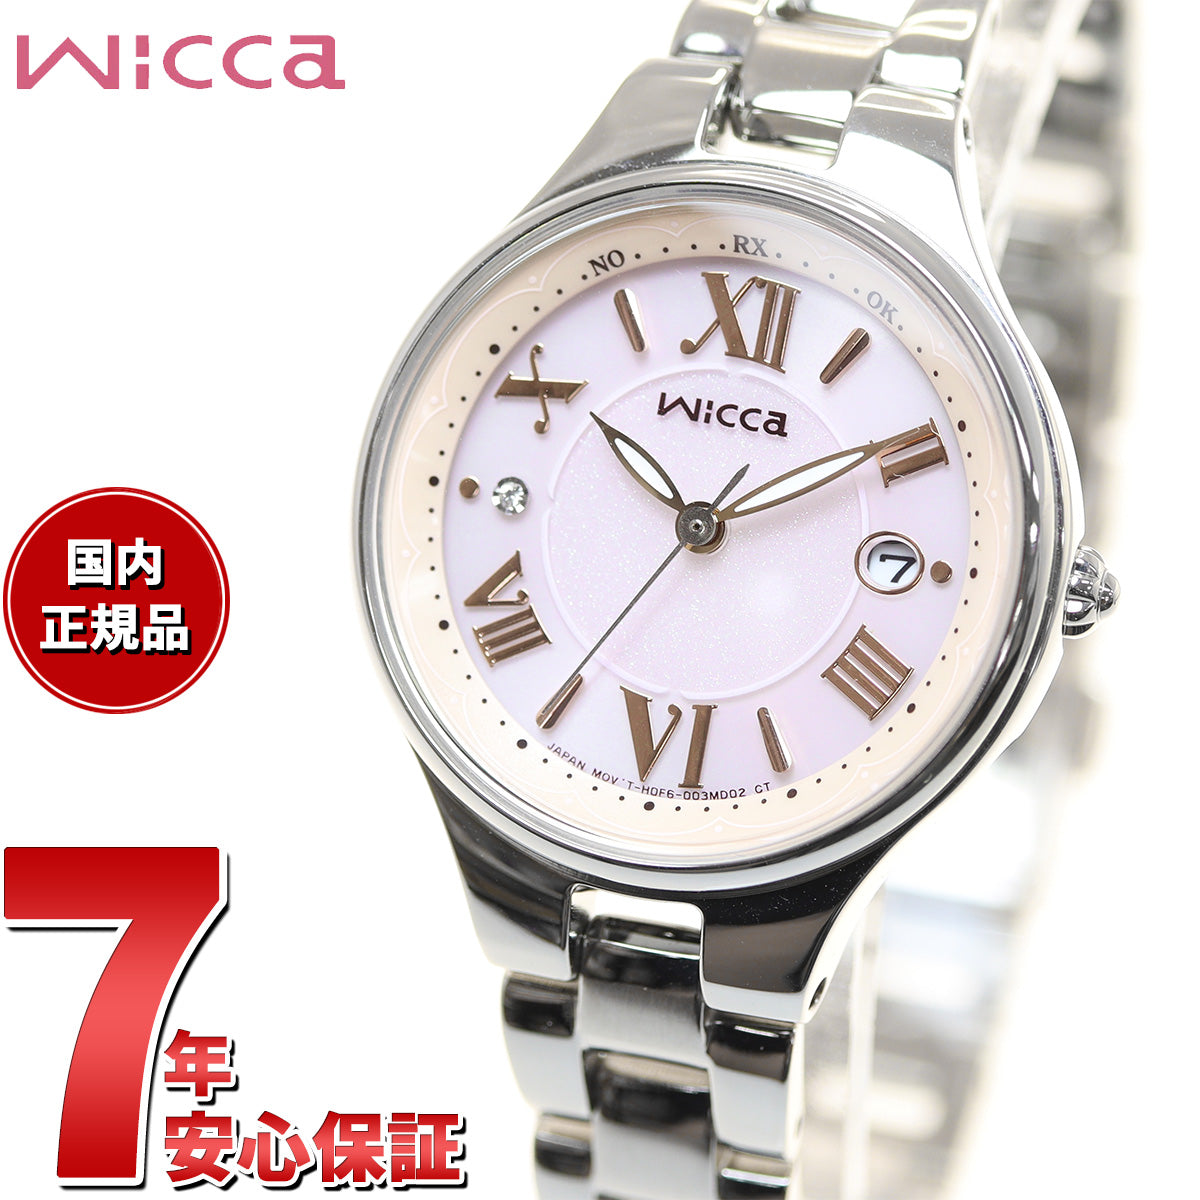 シチズン ウィッカ CITIZEN wicca ソーラーテック 電波時計 腕時計 レディース サブマスコミモデル KS1-813-91 甘酸っぱい ストロベリームース イメージ